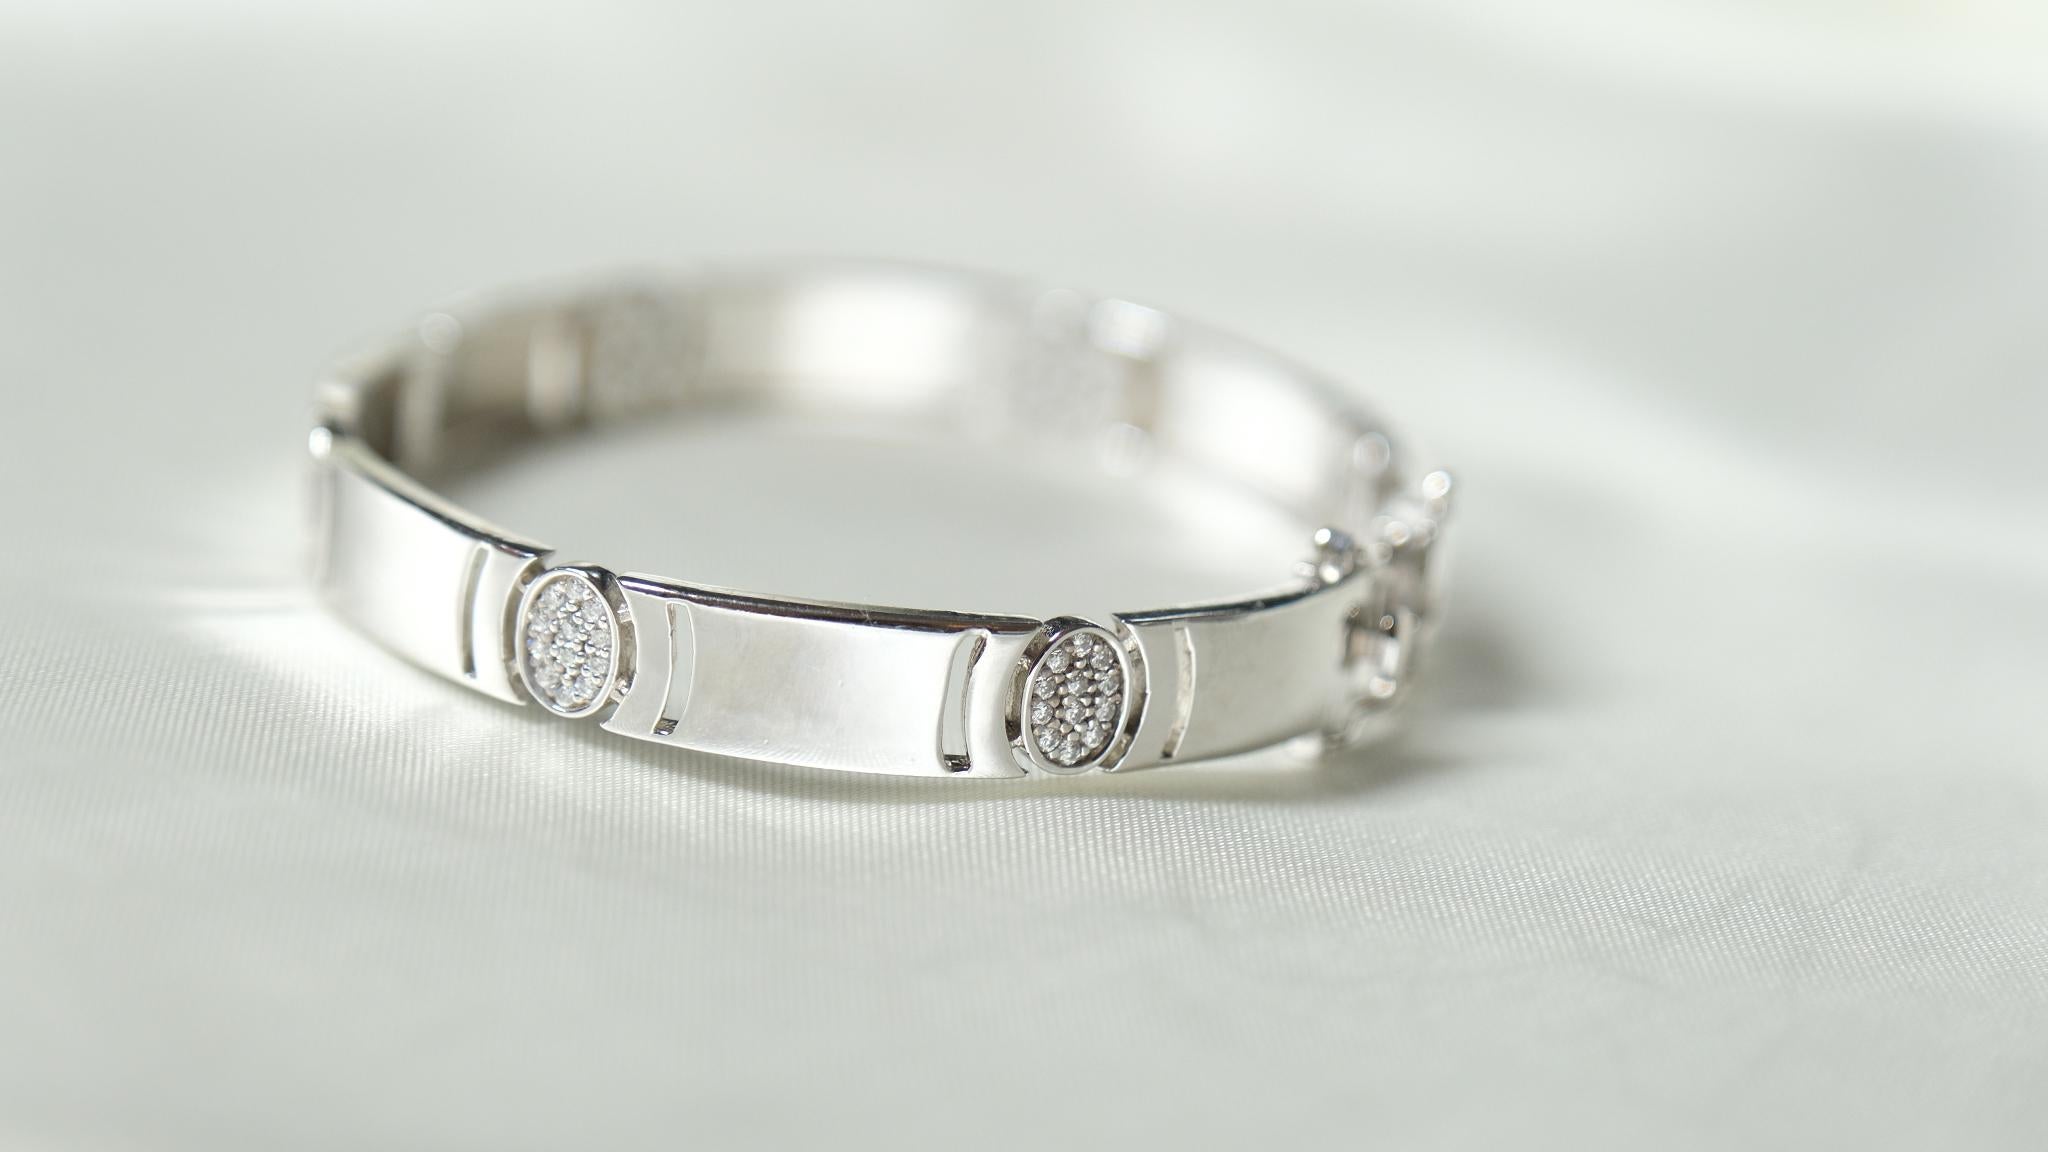 Le bracelet Arrêtoir est une expression glorieuse de pierres précieuses en grappes, l'art de la découverte de manière joyeuse. Fabriqué à la main à la perfection avec la forme ovale suspendue avec des pierres précieuses pour apporter une œuvre d'art